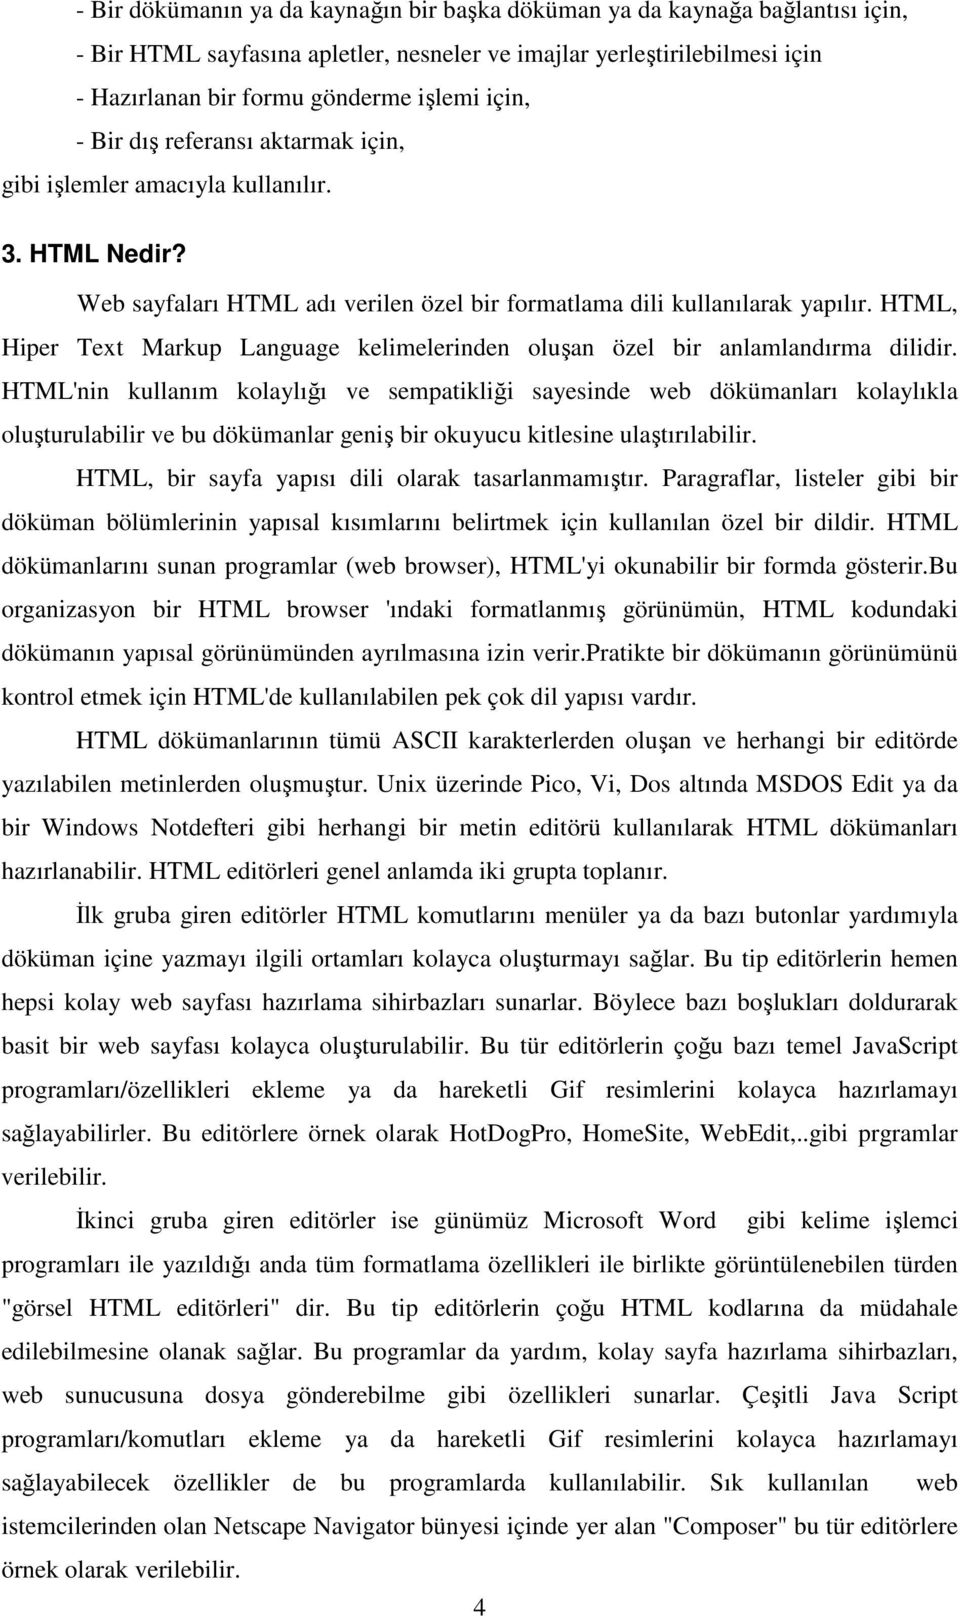 HTML, Hiper Text Markup Language kelimelerinden oluşan özel bir anlamlandırma dilidir.